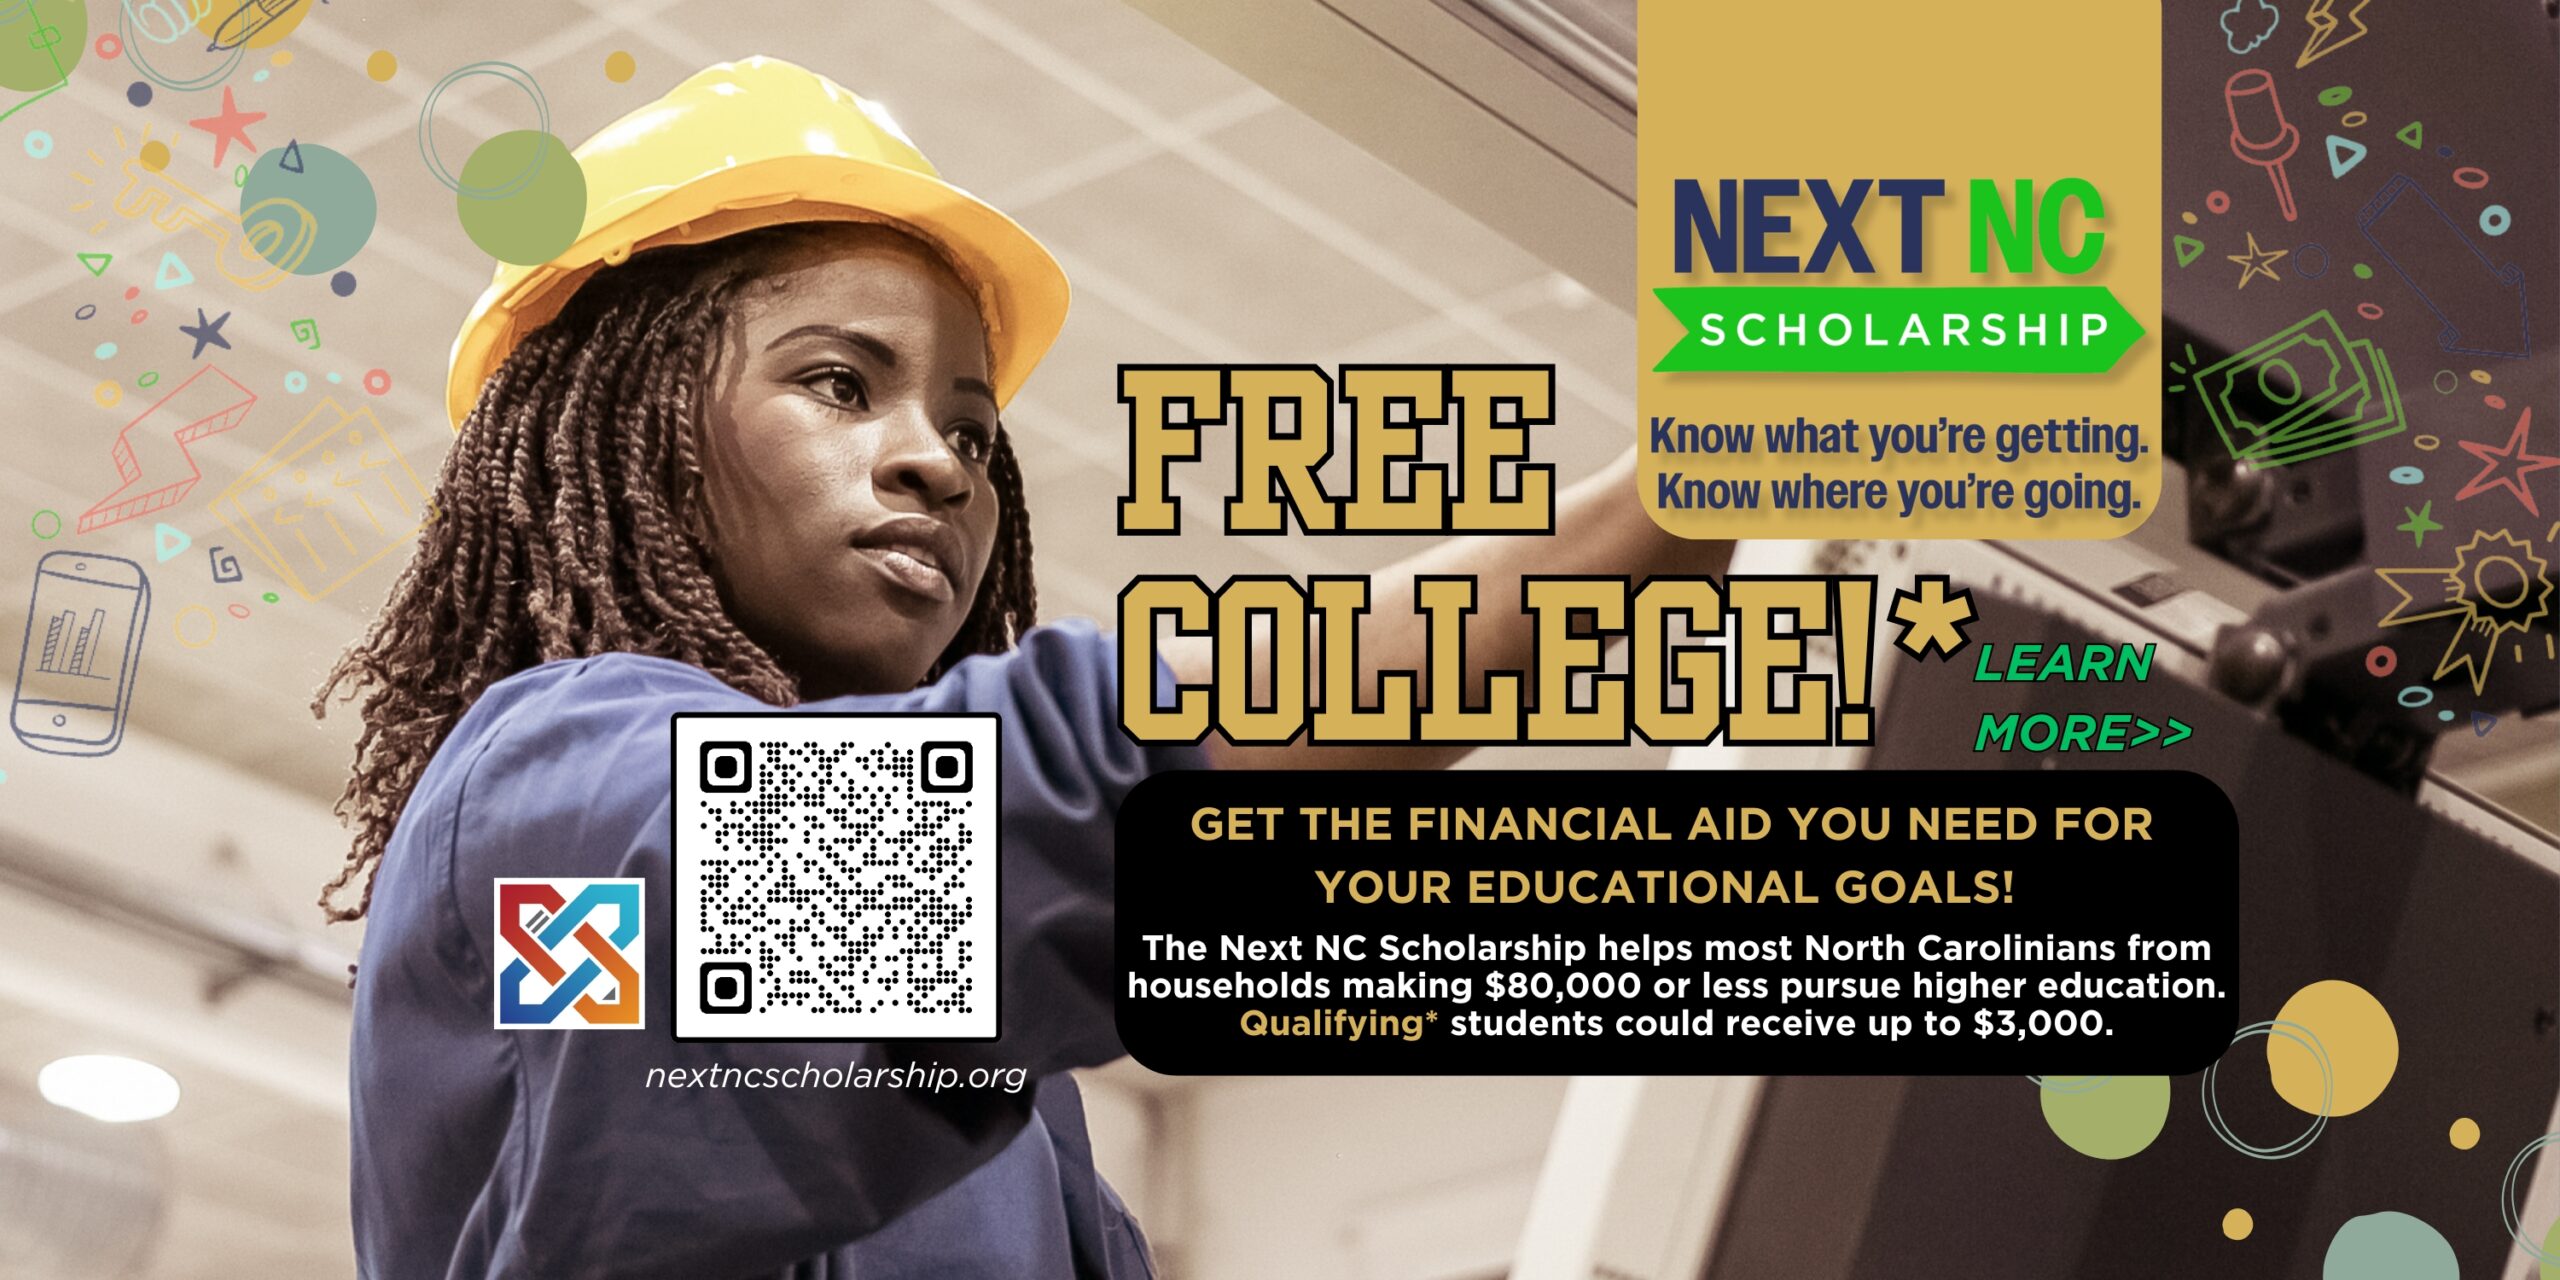 "다음 NC 장학금 - 무엇을 받는지 알고, 어디로 가는지 알아보세요. | 무료 대학!* 자세히 알아보기 - 교육 목표에 필요한 재정 지원을 받으세요! | 다음 NC 장학금은 대부분의 노스캐롤라이나 주민들에게 도움이 됩니다. 소득이 $80,000 이하인 가구의 경우 고등 교육을 받을 자격을 갖춘* 학생은 최대 $3,000를 받을 수 있습니다." 자세한 내용을 보려면 배너를 클릭하거나 nextncscholarship.org를 방문하세요.